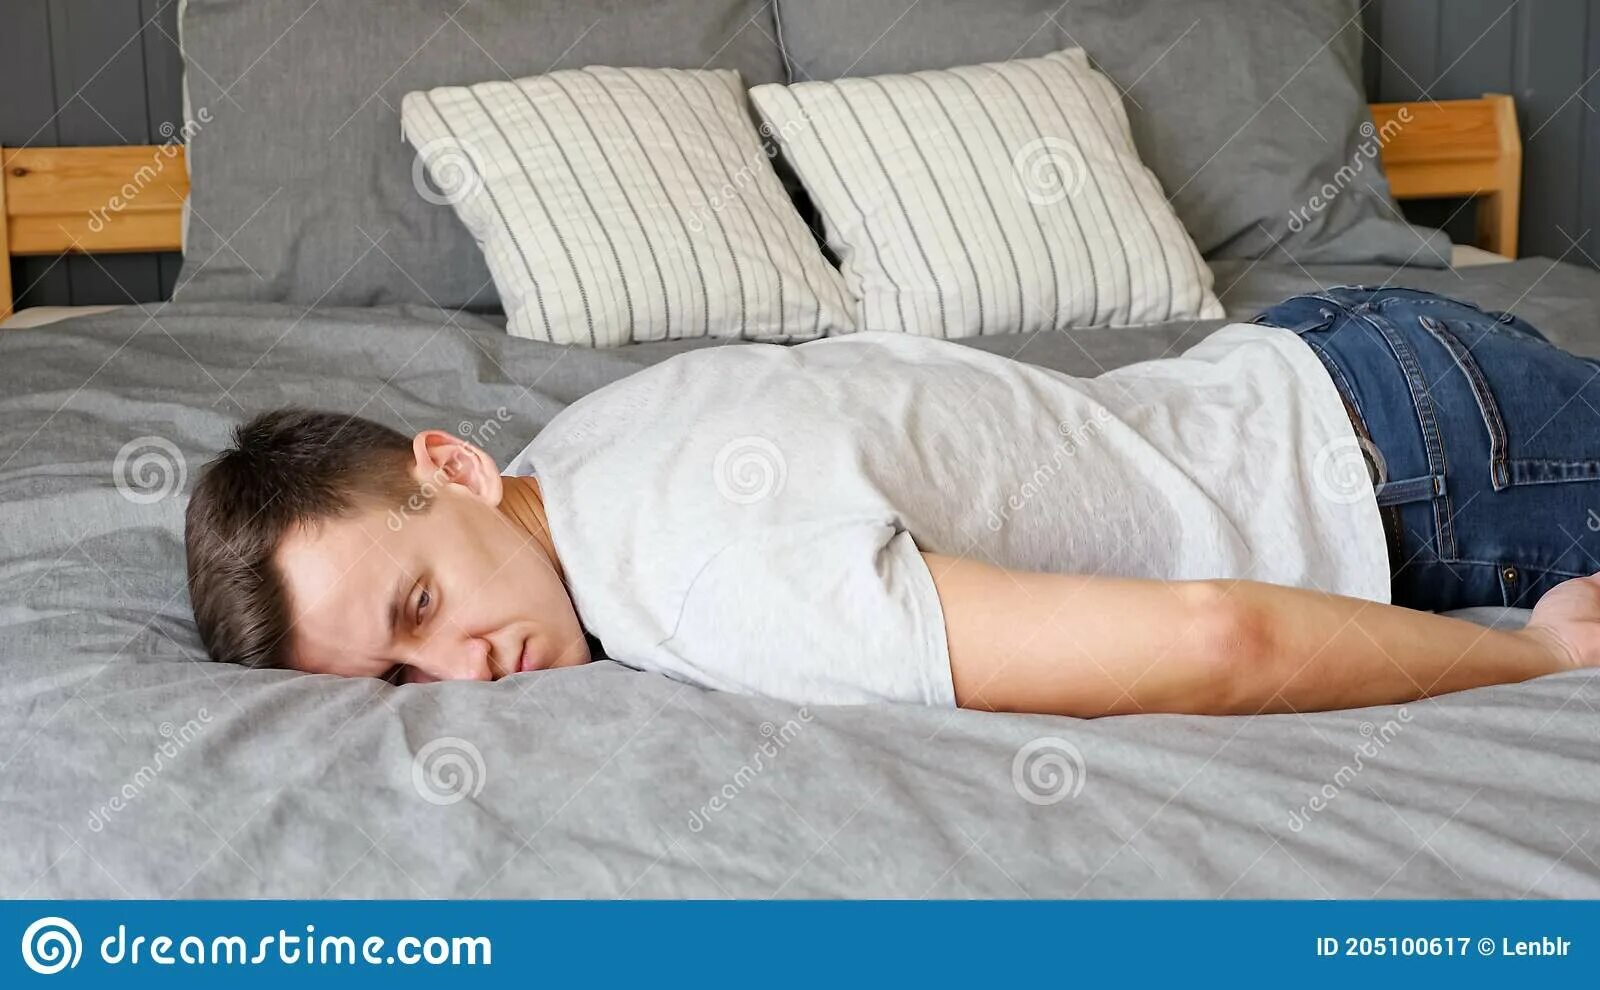 Просто лежит на кровати. Уставший человек на кровати. Падает на кровать. Уставший парень.